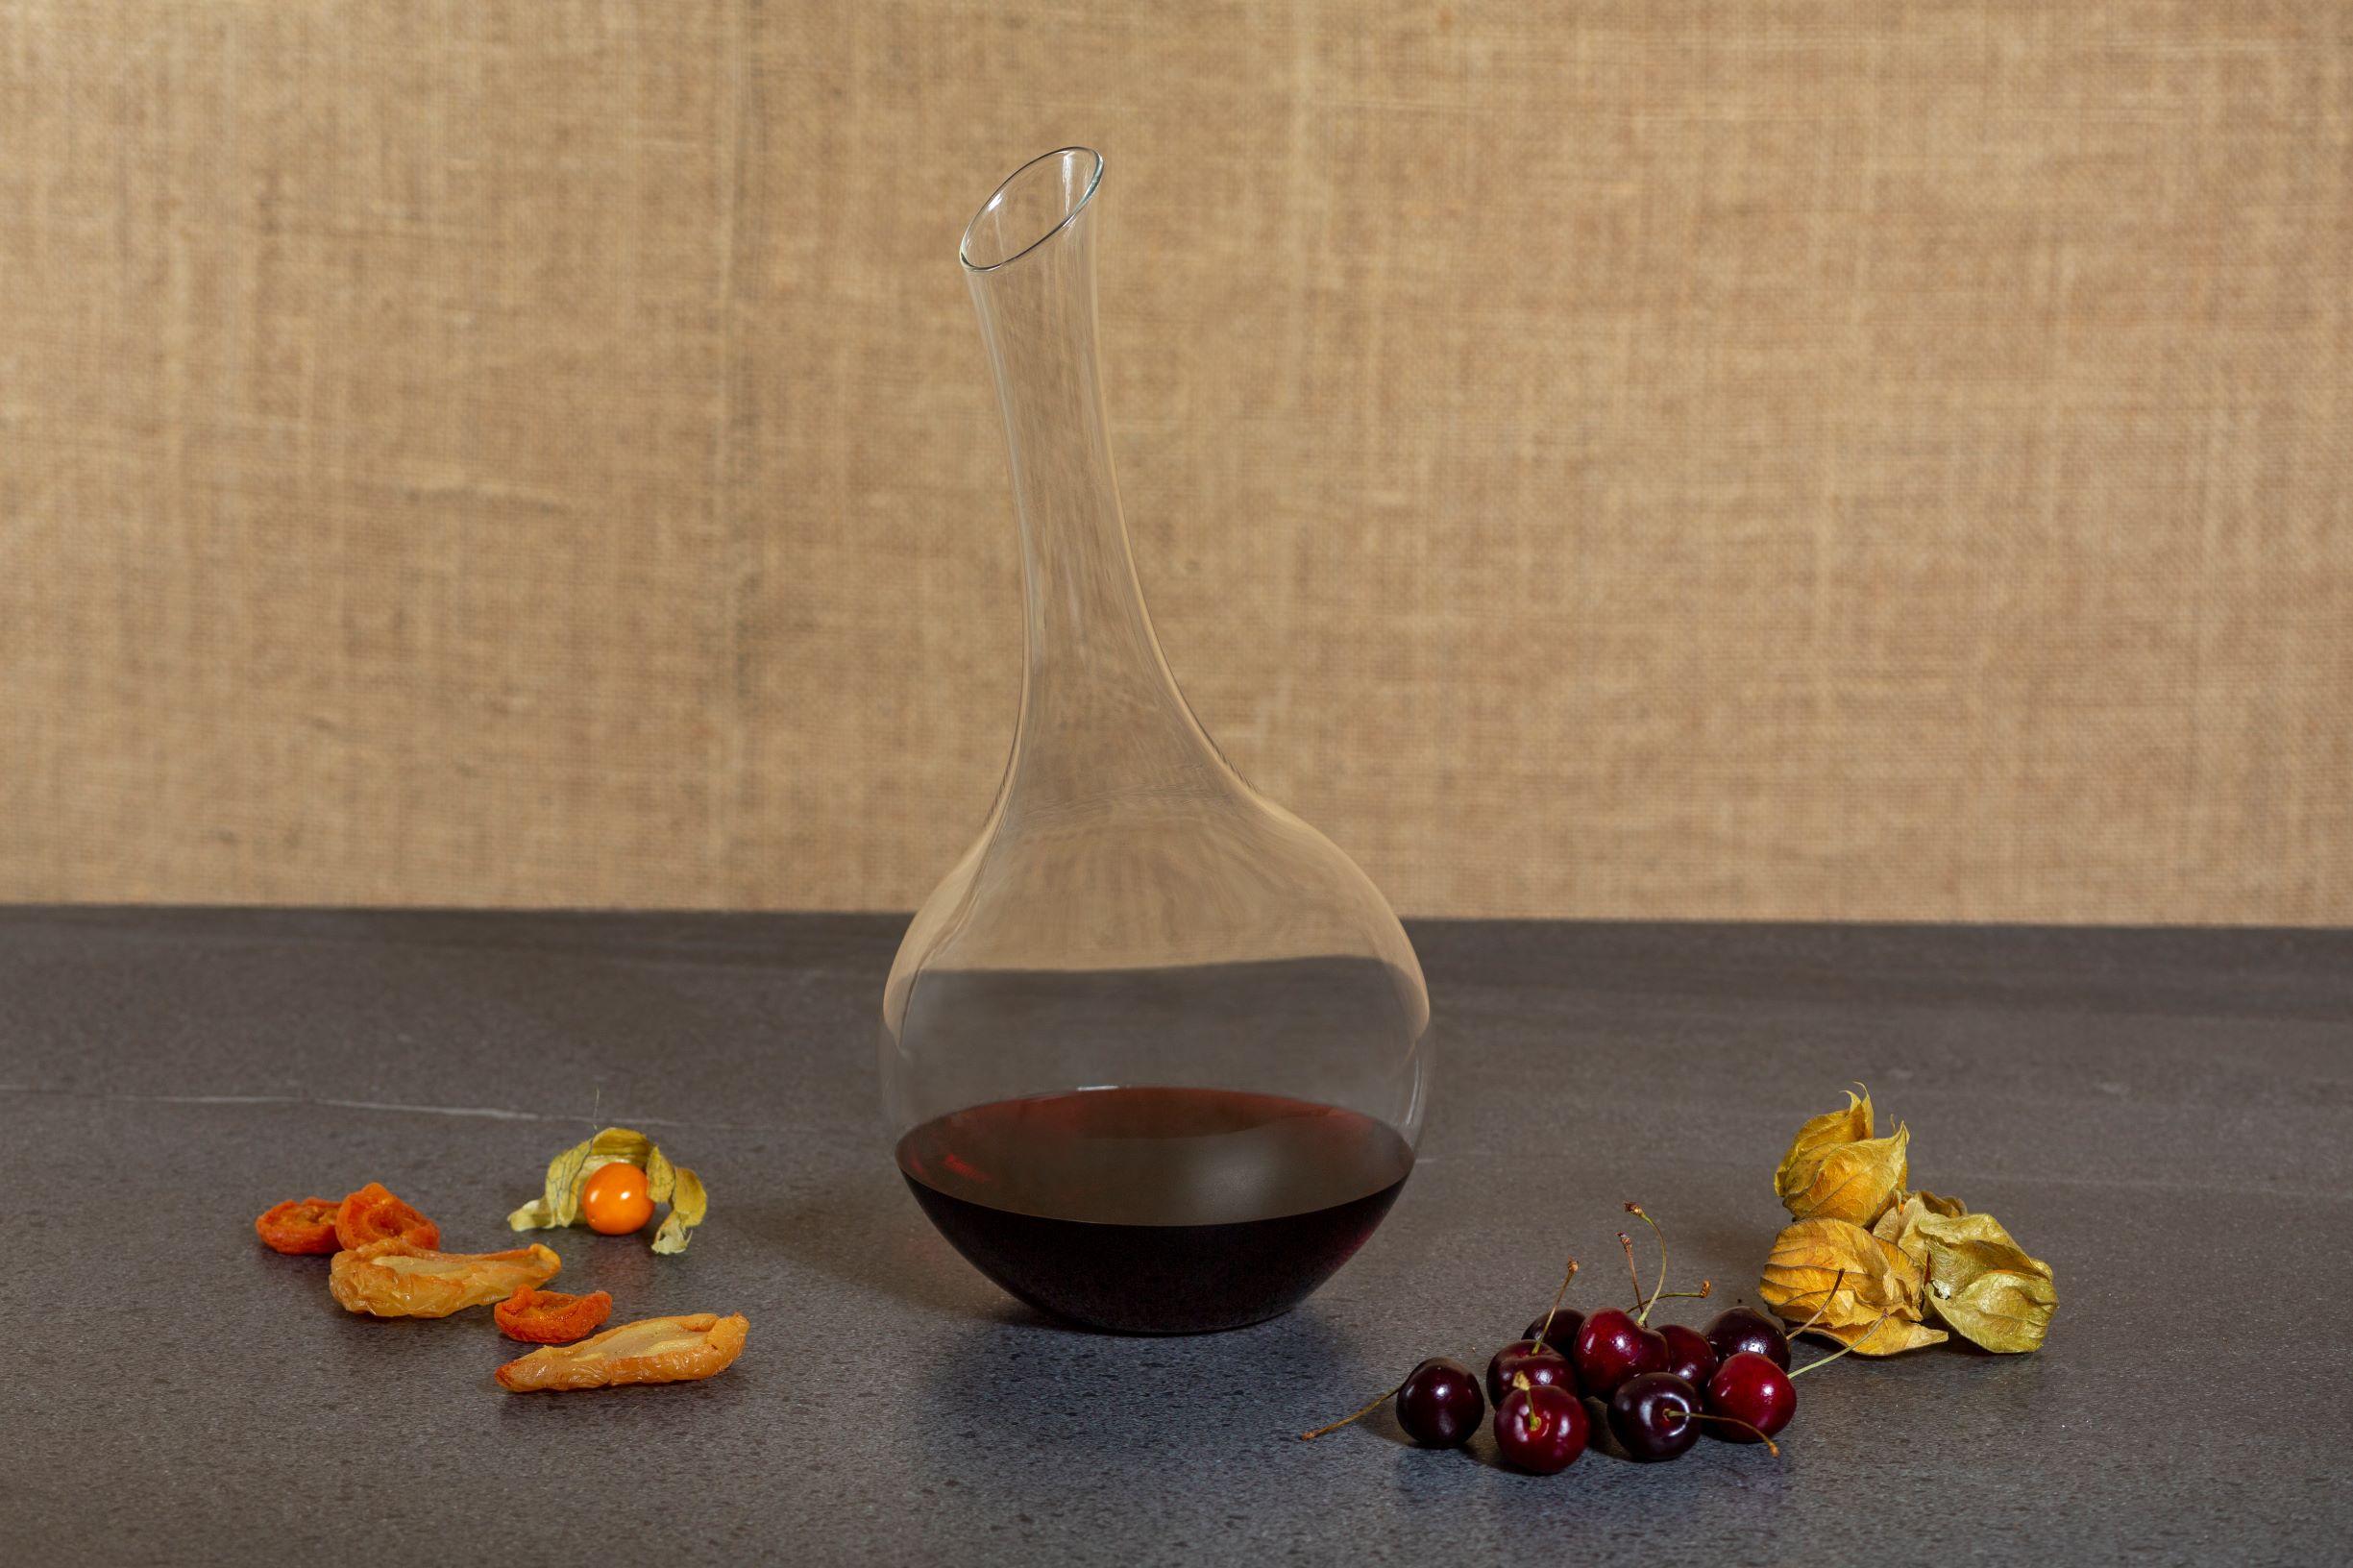 El decantador de vino es una jarra de cristal de borosilicato soplado a mano con forma orgánica. 

La colección Pok celebra el arte de los abalorios hechos a mano por las mujeres Pokot del noroeste de Kenia. Influenciado por los recipientes